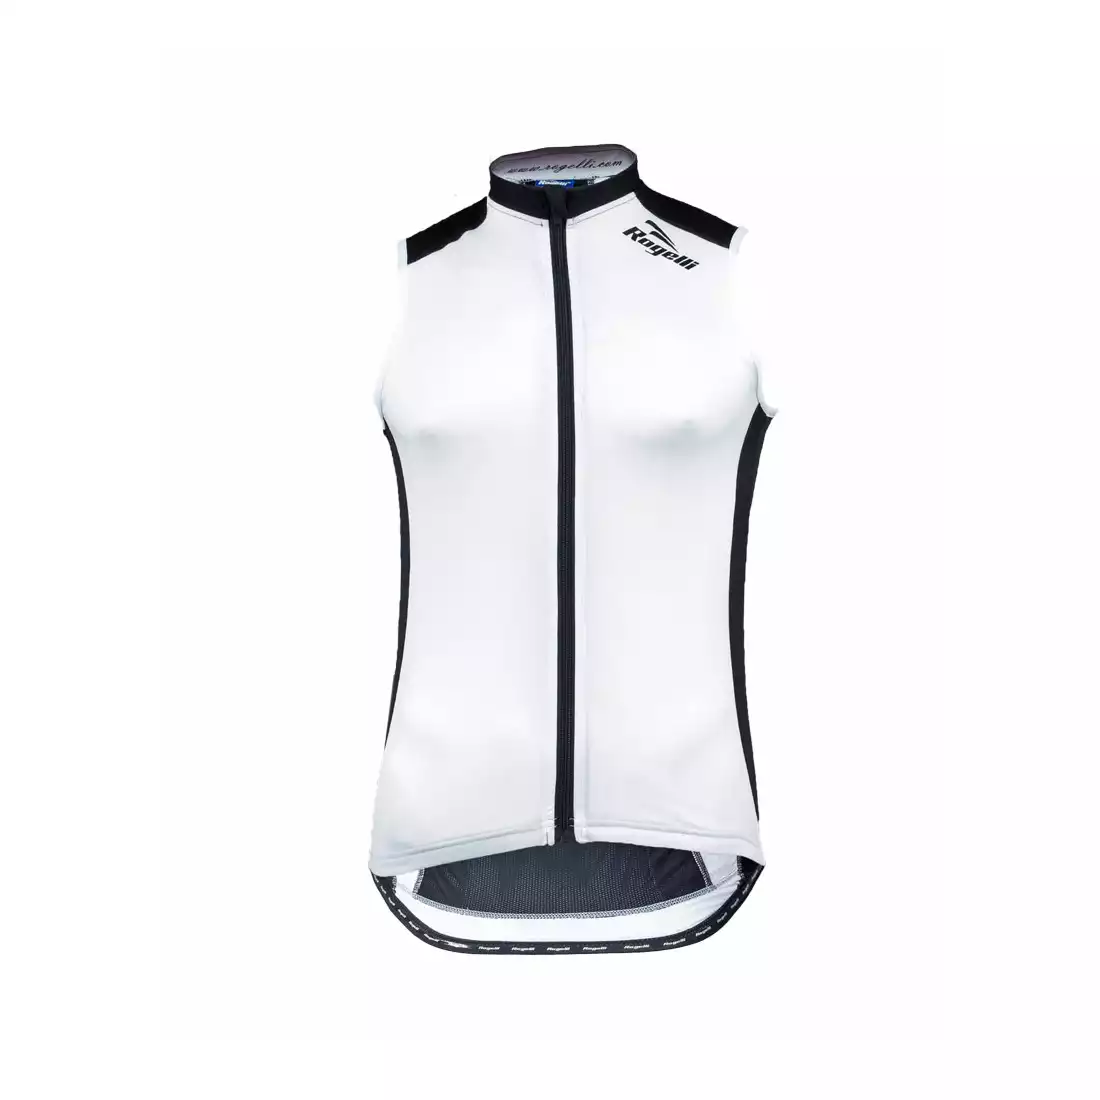 ROGELLI POLINO - męska koszulka rowerowa bez rękawków, kolor: biało-czarny